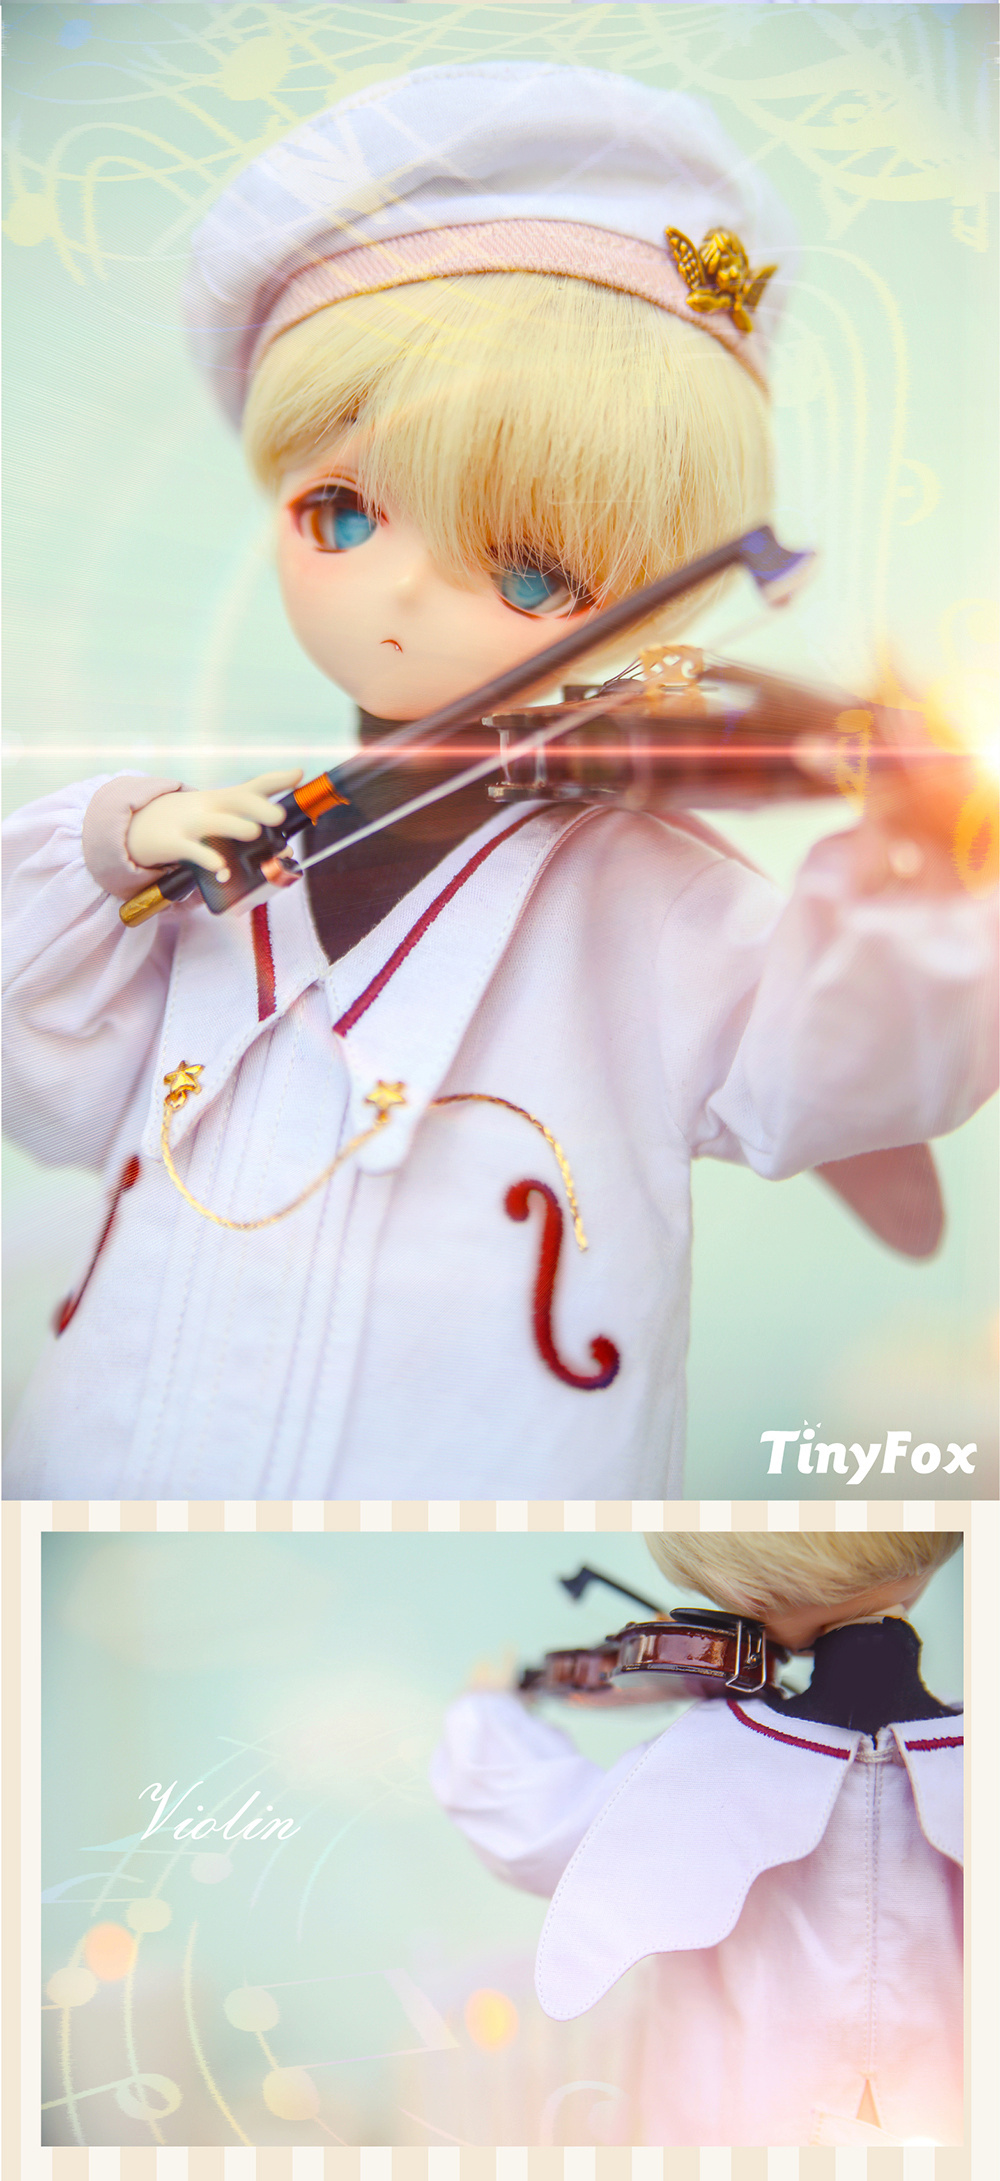 [TinyFox] The Tiny Stars Project - Memeha O1cn0115